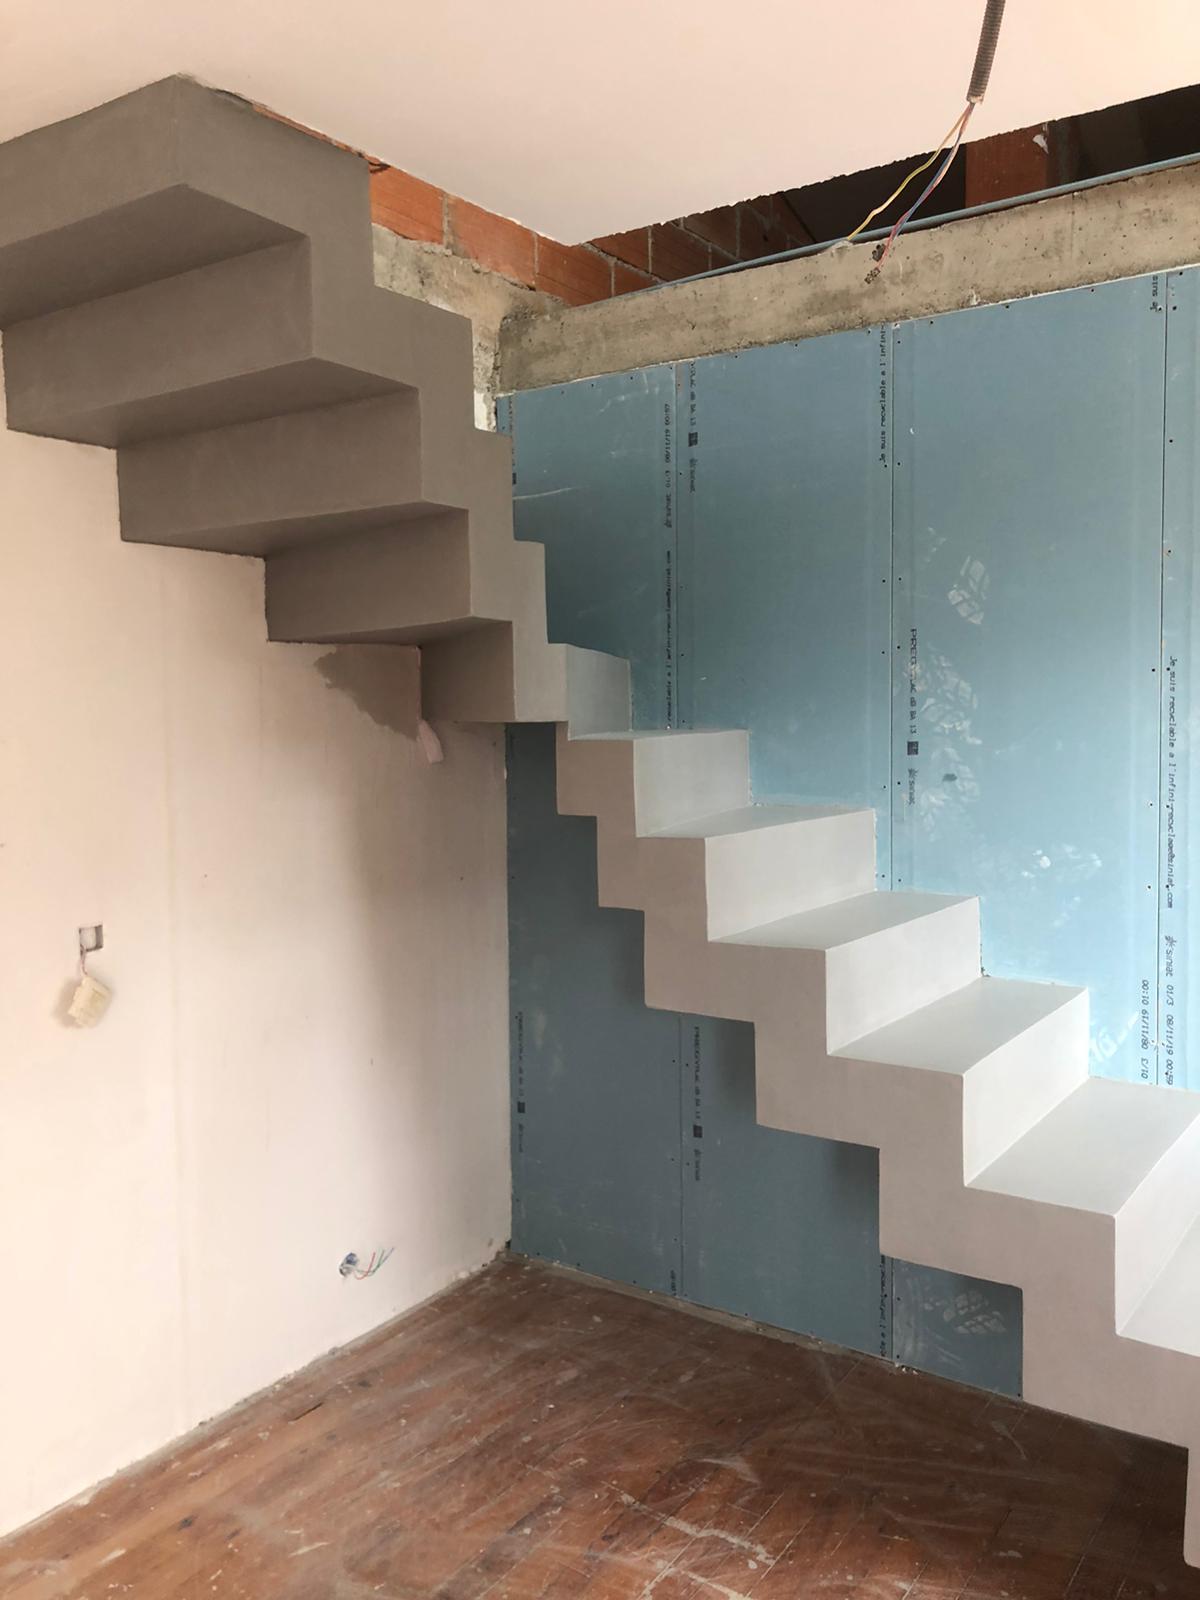 Béton ciré gris argent sur un escalier crémaillère un quart balancé dans une maison en cours de rénovation